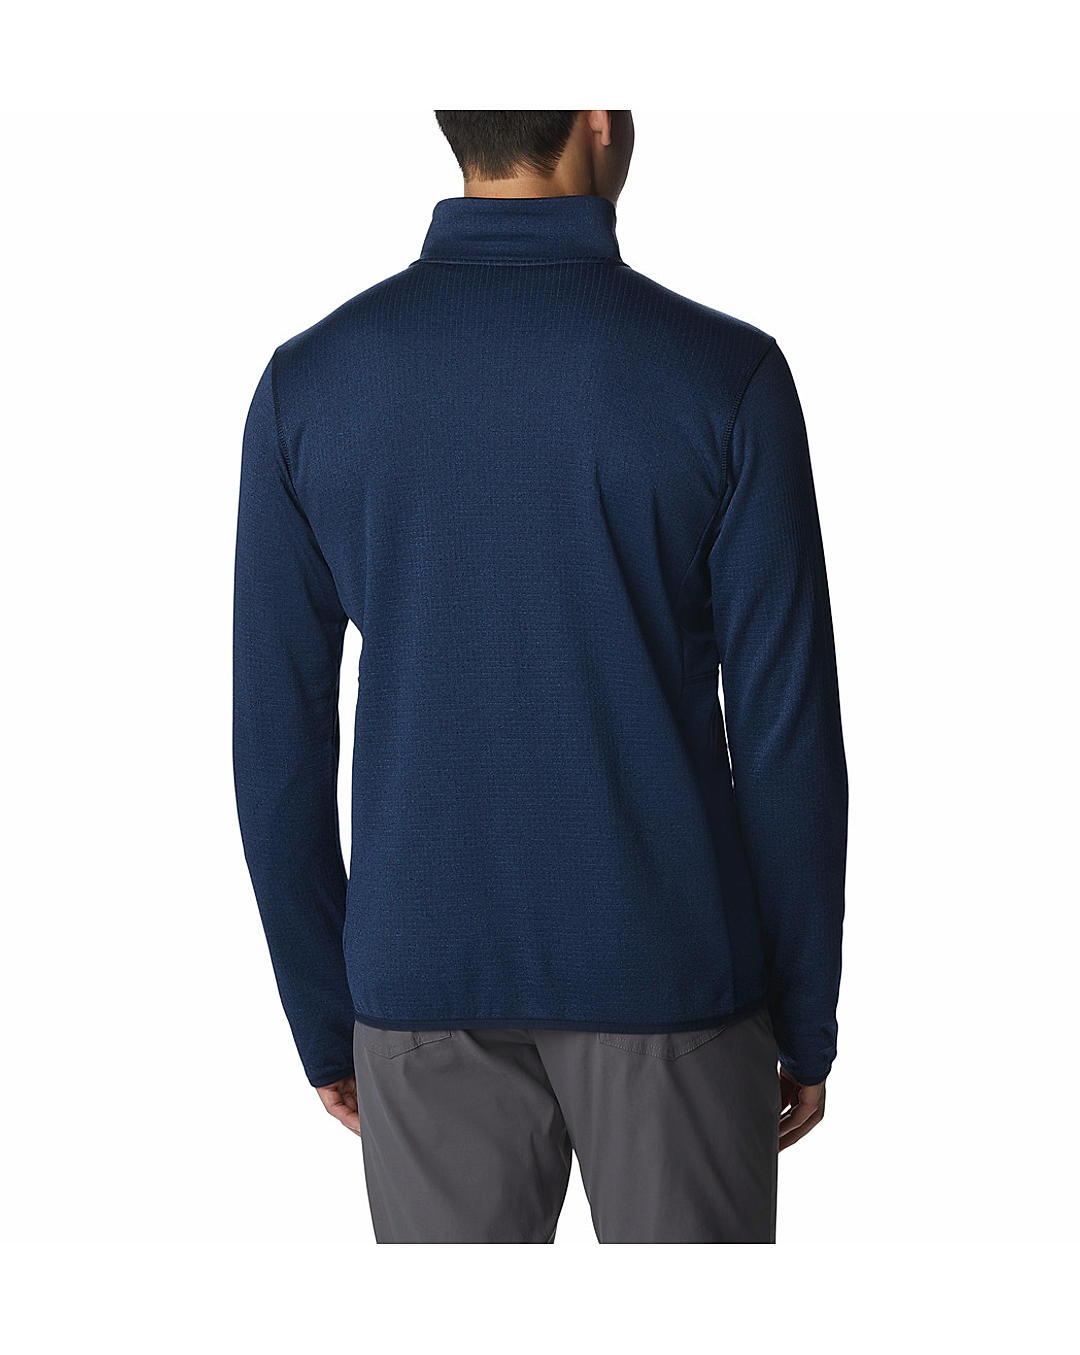 Buy Columbia Blue Park View Fleece Full Zip Jackets For Men Online at  Adventuras